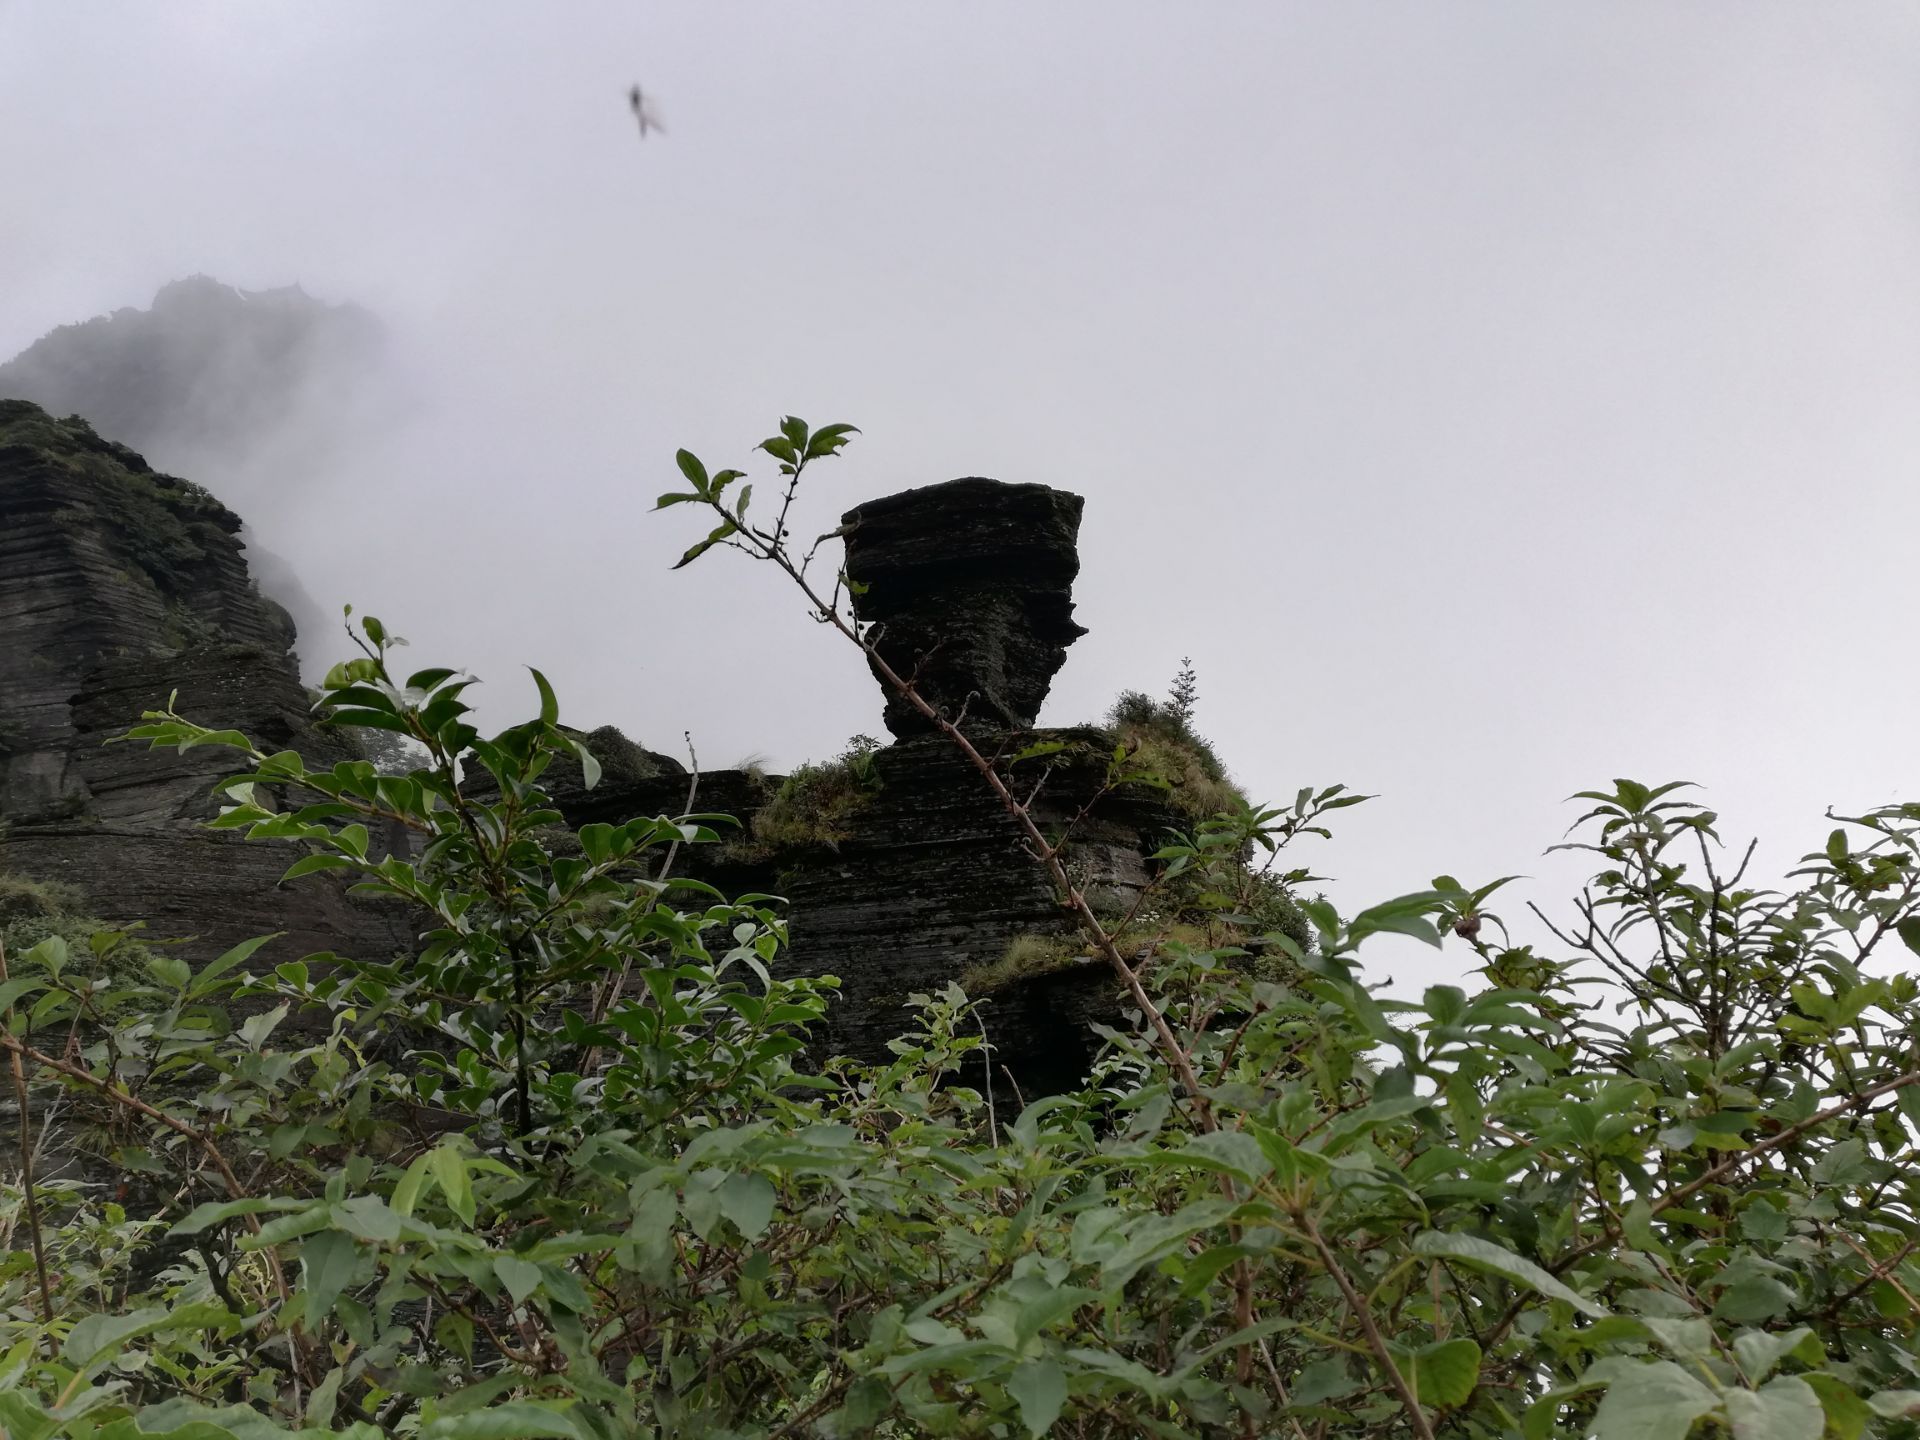 翻天印景点位于蘑菇石附近,在一处山崖的顶端平铺着一面石台,一块巨石